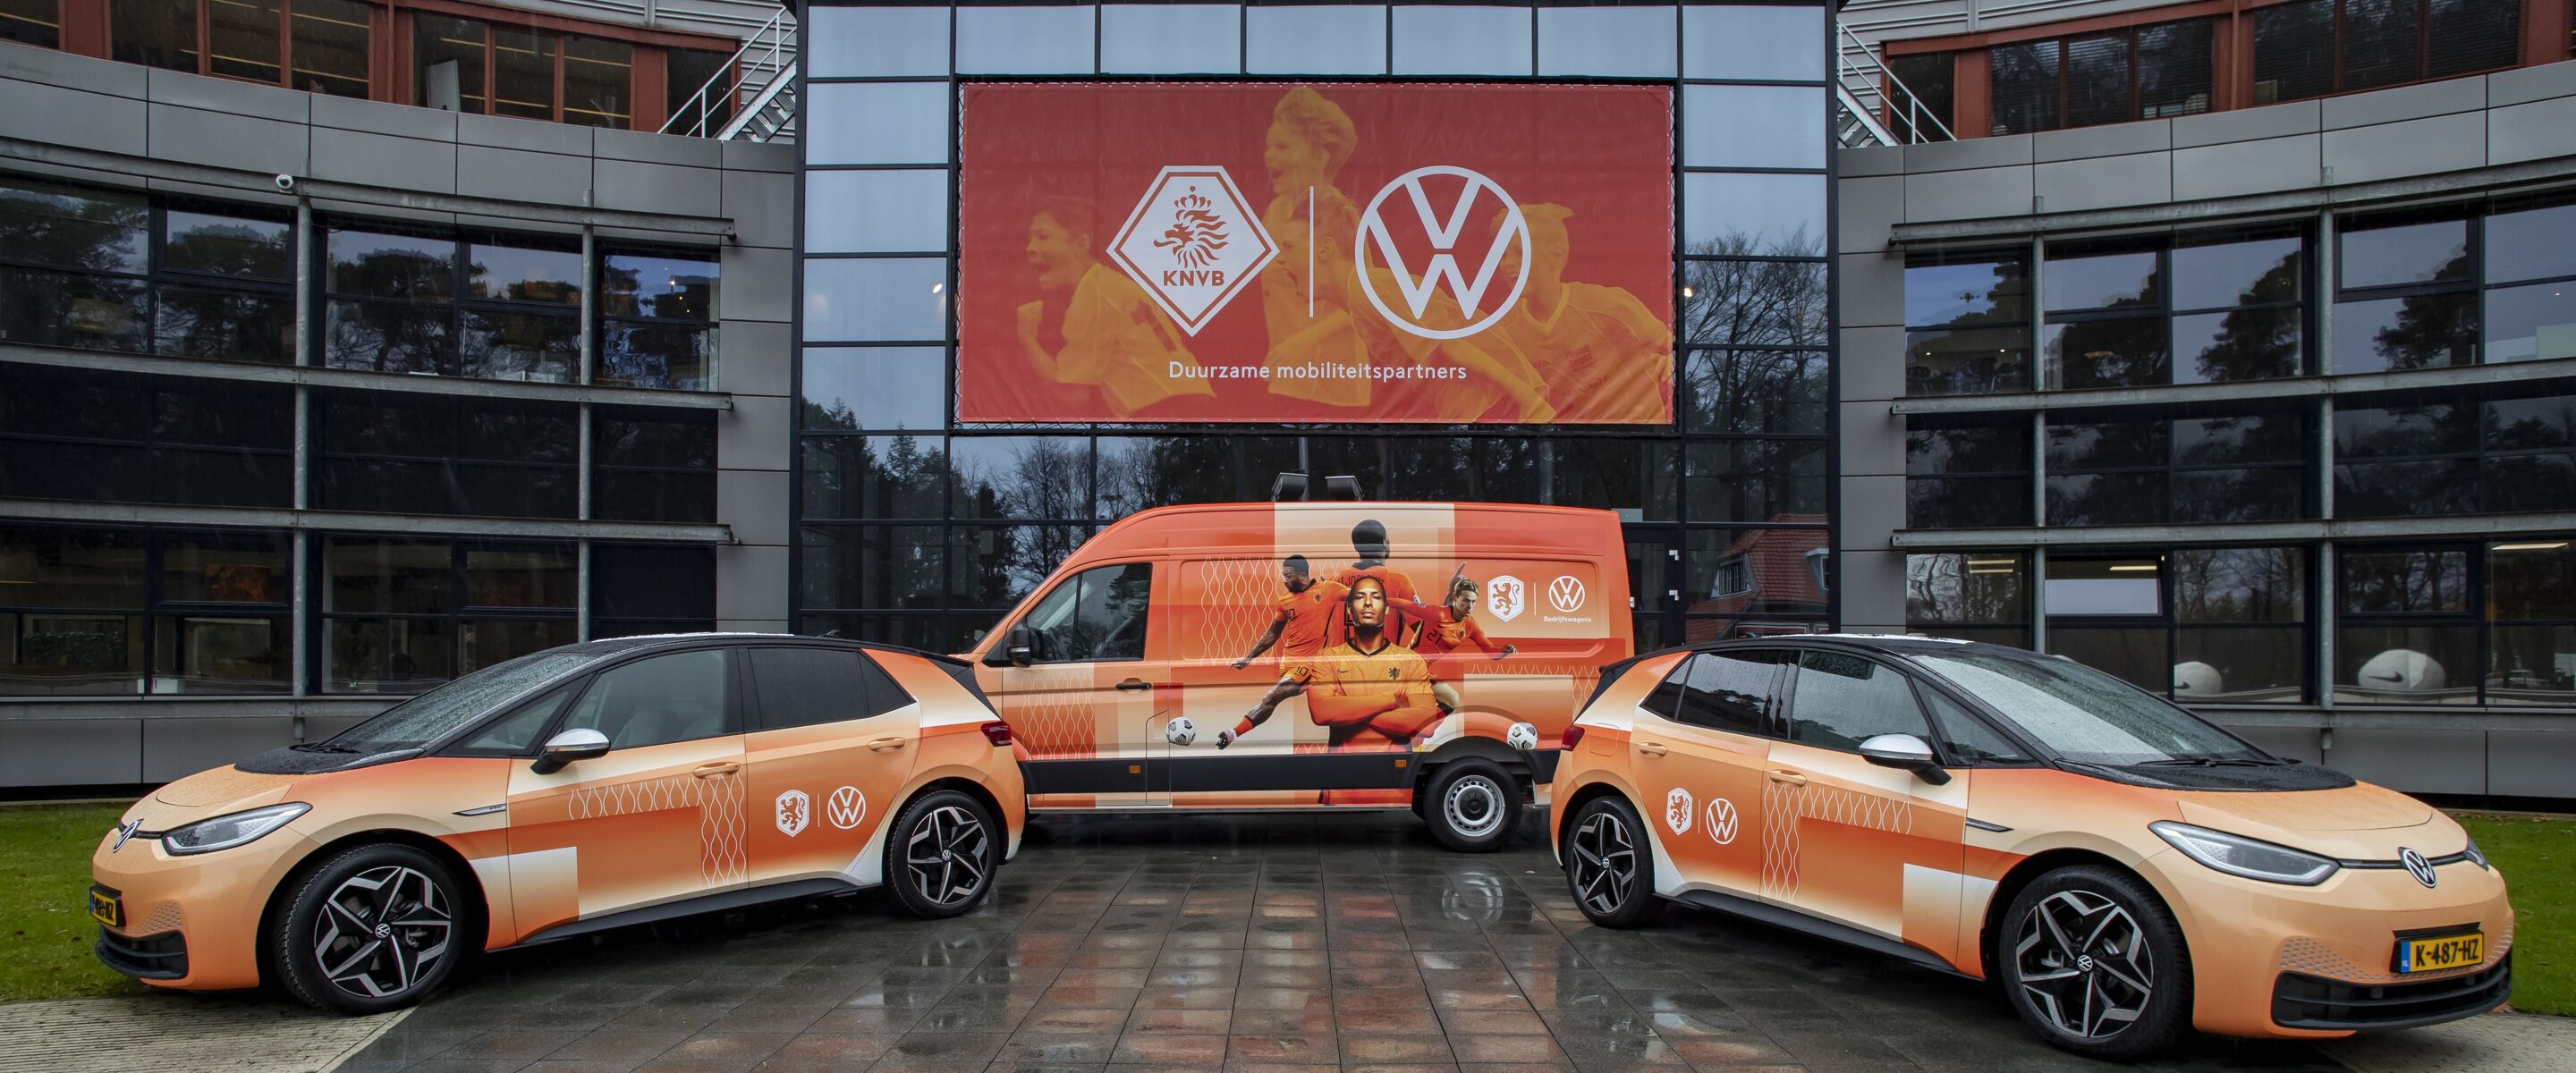 Samen naar de wedstrijd met Volkswagen “GO”